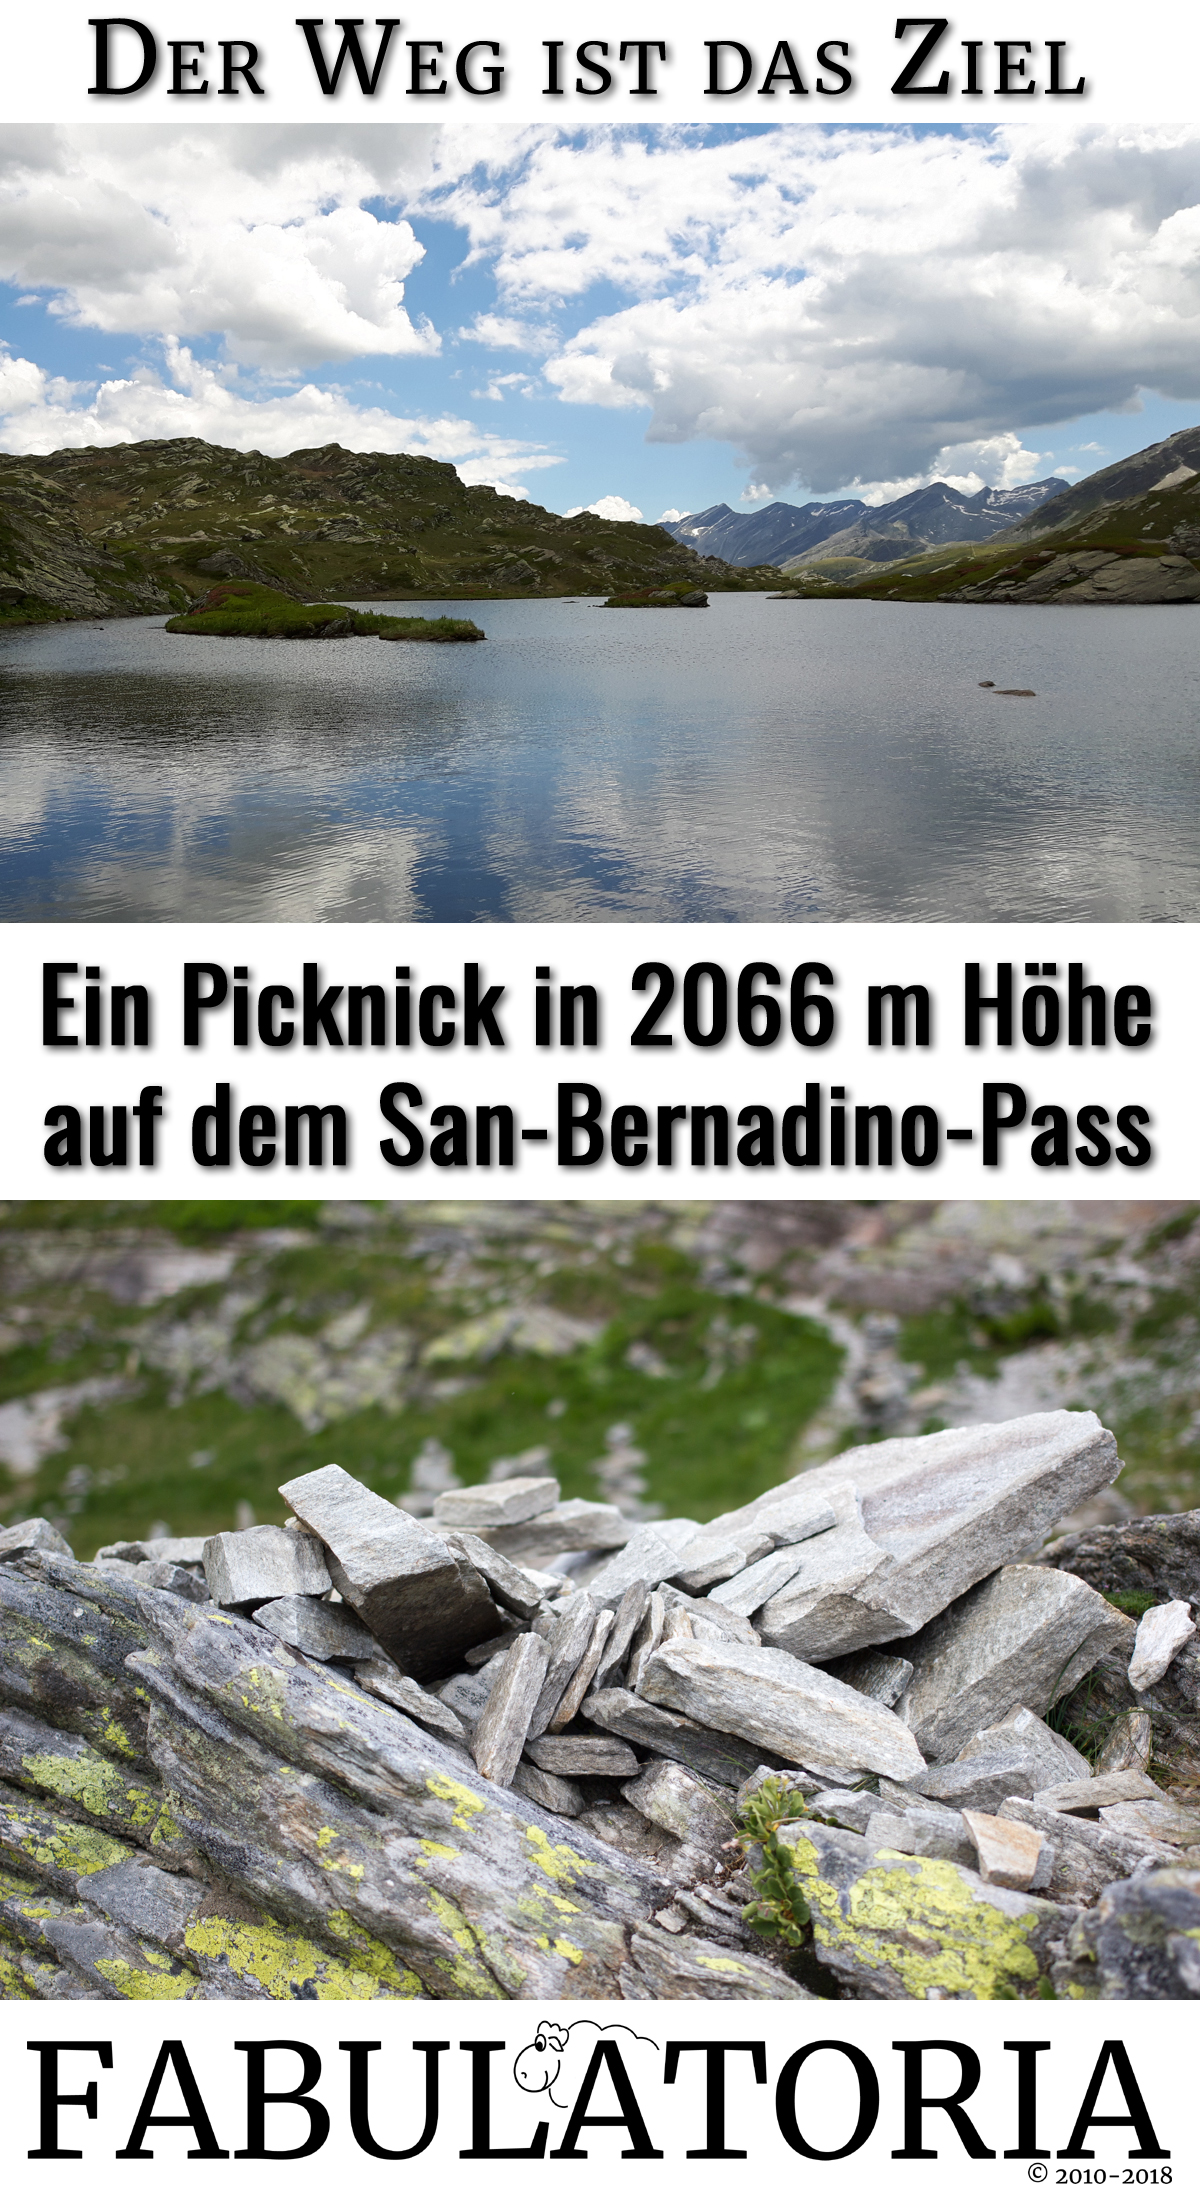 Der Weg ist das Ziel: Ein Picknick in 2066 m Höhe auf dem San-Bernadino-Pass